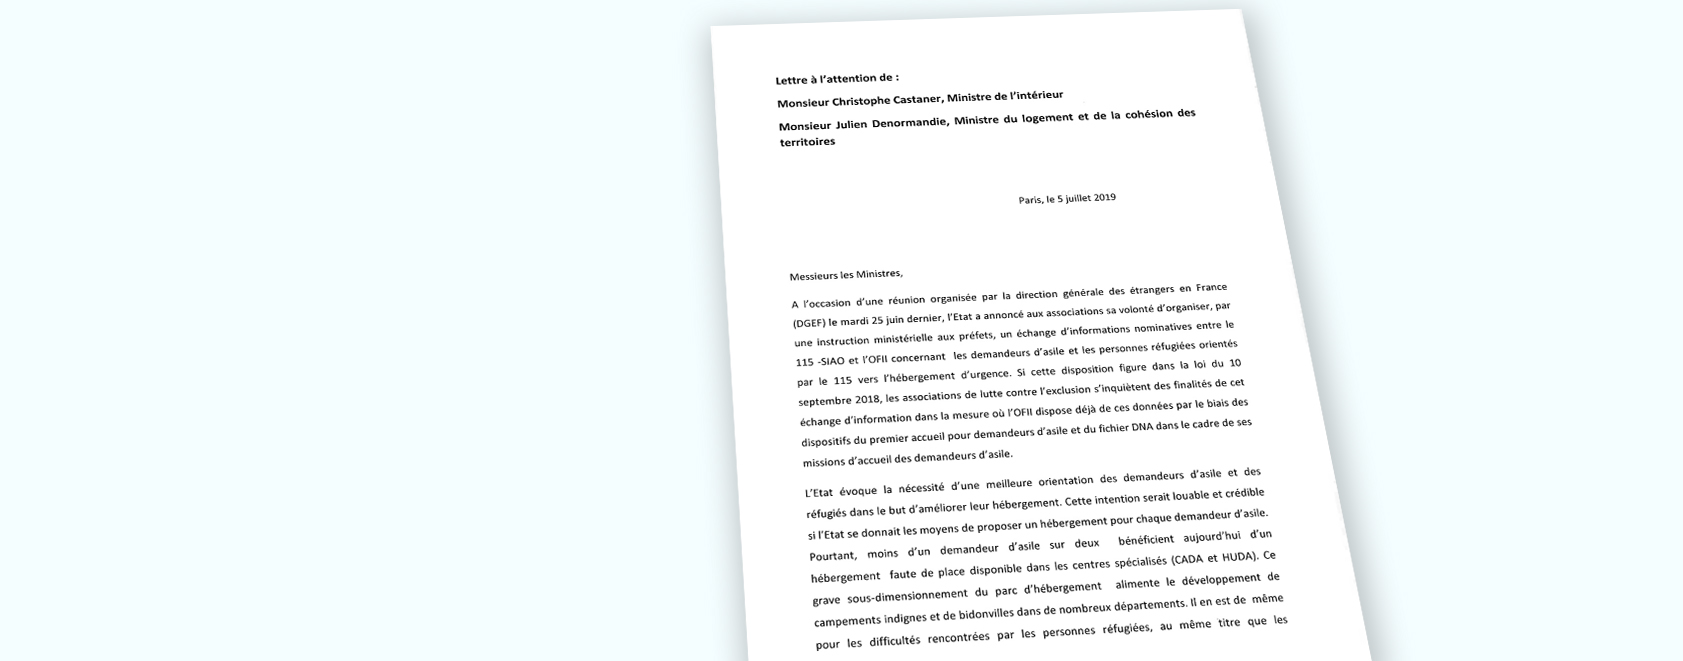 Données du 115-SIAO transmises à l’Intérieur : lettre ouverte de 40 associations